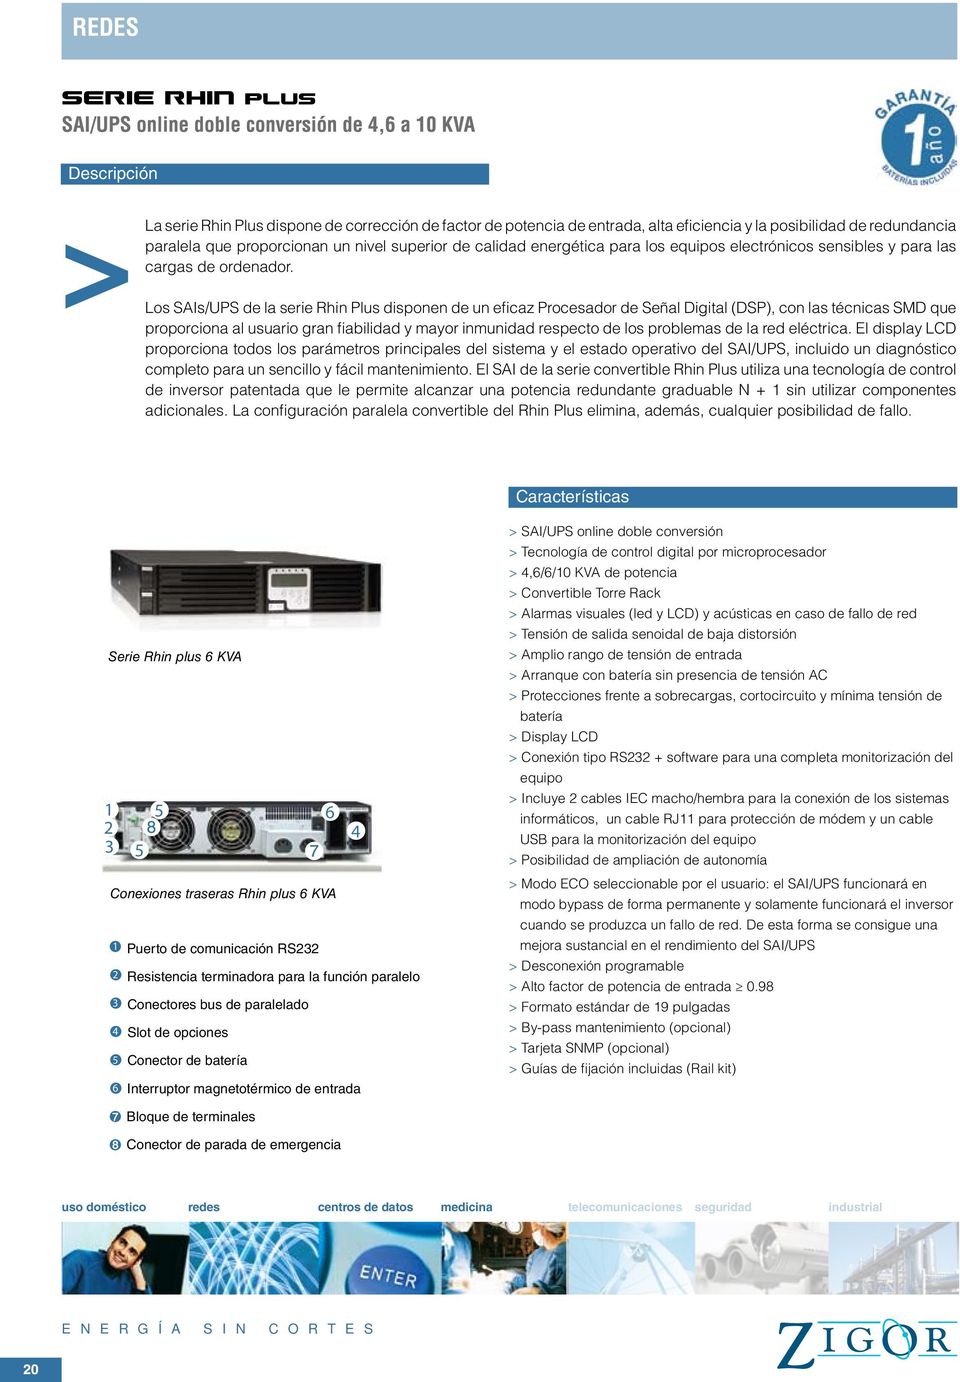 Los SAIs/UPS de la serie Rhin Plus disponen de un eficaz Procesador de Señal Digital (DSP), con las técnicas SMD que proporciona al usuario gran fiabilidad y mayor inmunidad respecto de los problemas